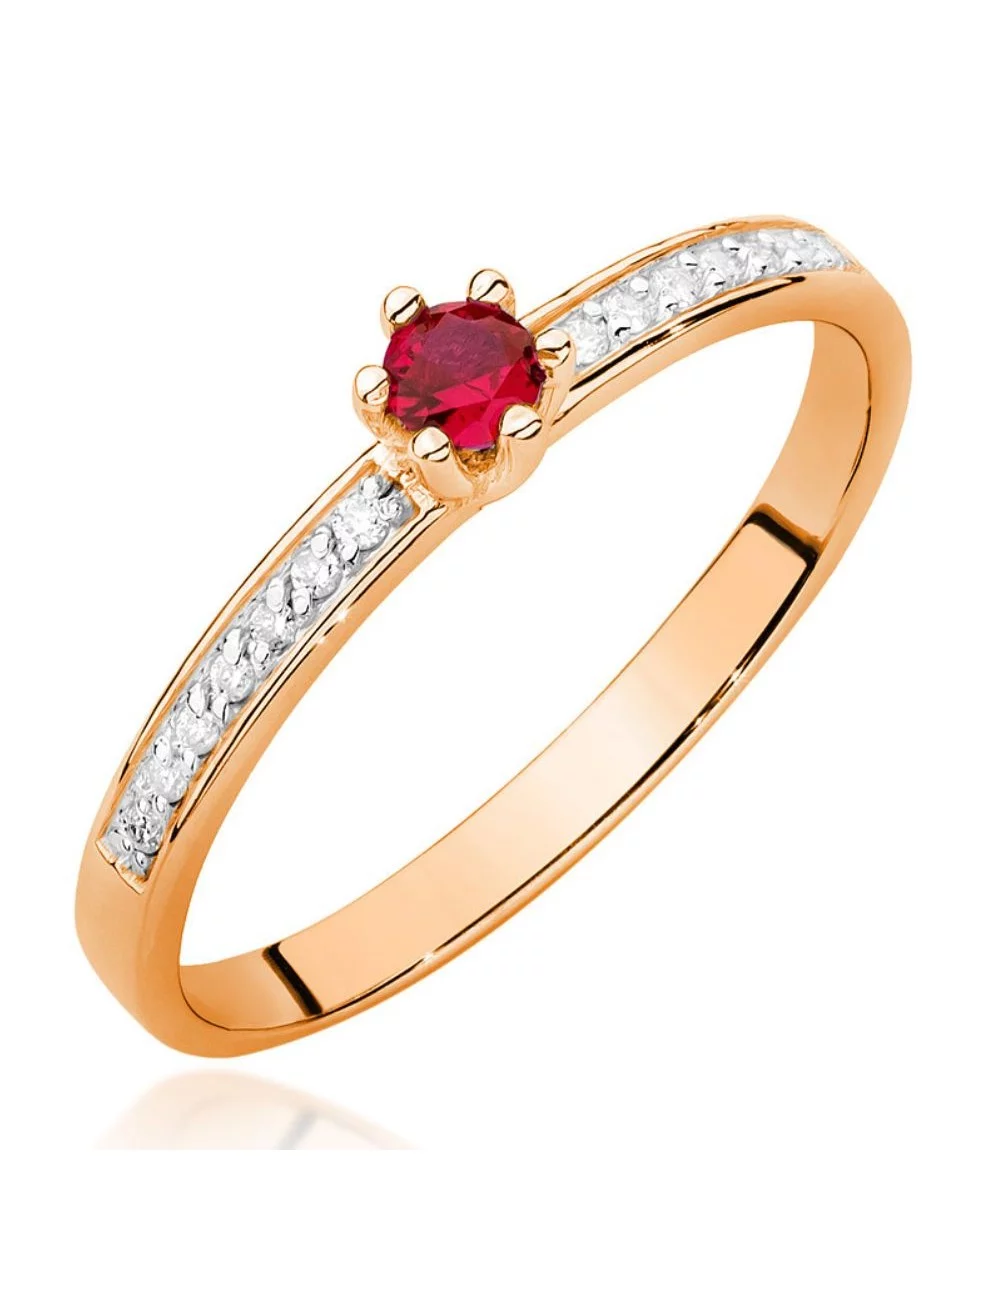 Raudonas brangakmenis - raudono aukso žiedas su rubinu ir deimantais